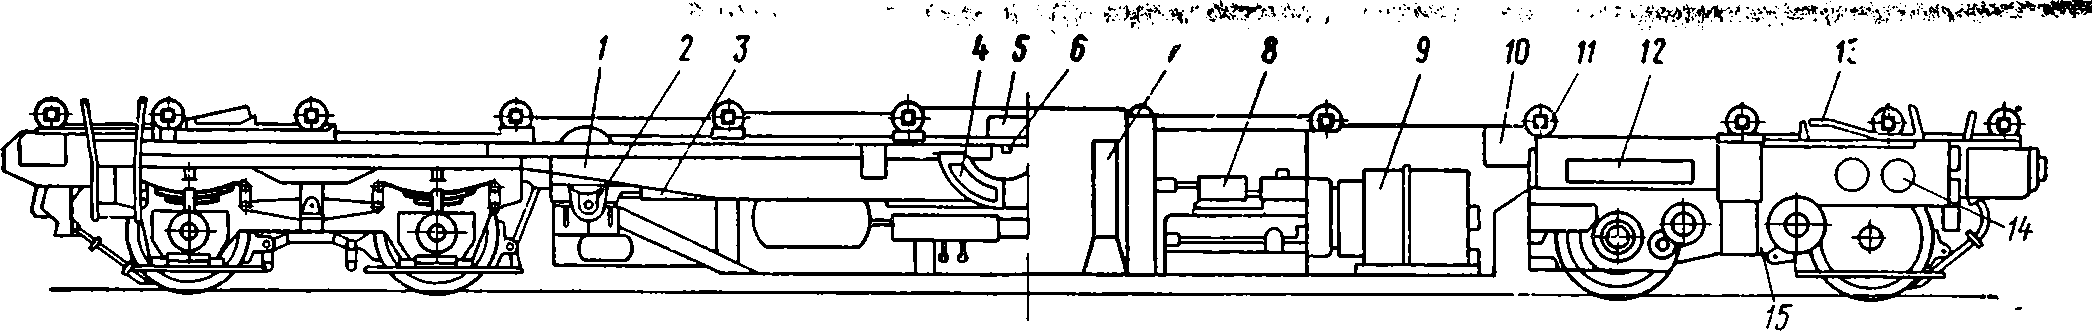 Схема моторной платформы